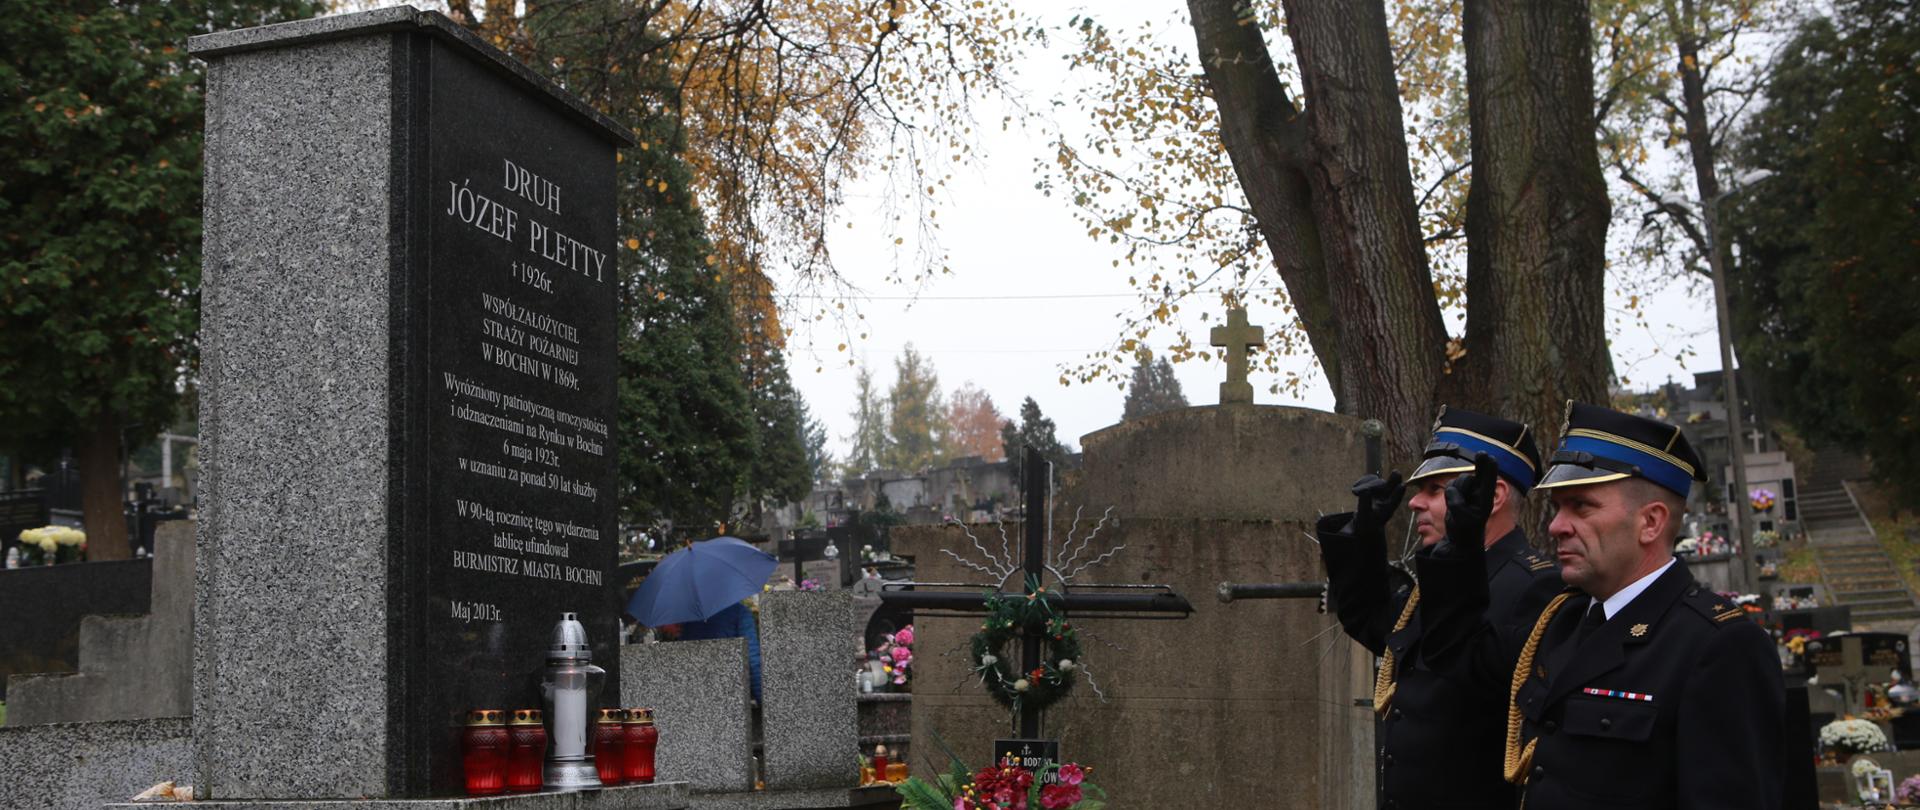 Pomnik z granitu na cmentarzu z inskrypcją Druh Józef Pletty 1926 r. współzałożyciel Straży Pożarnej w Bochni w 1869 r. Po prawej stronie pomnika 2 strażaków z Państwowej Straży Pożarnej w umundurowaniu wyjściowym oddają honory poprzez salutowanie zasłużonemu strażakowi. Na pomniku palą się znicze i znajdują się wiązanki kwiatów